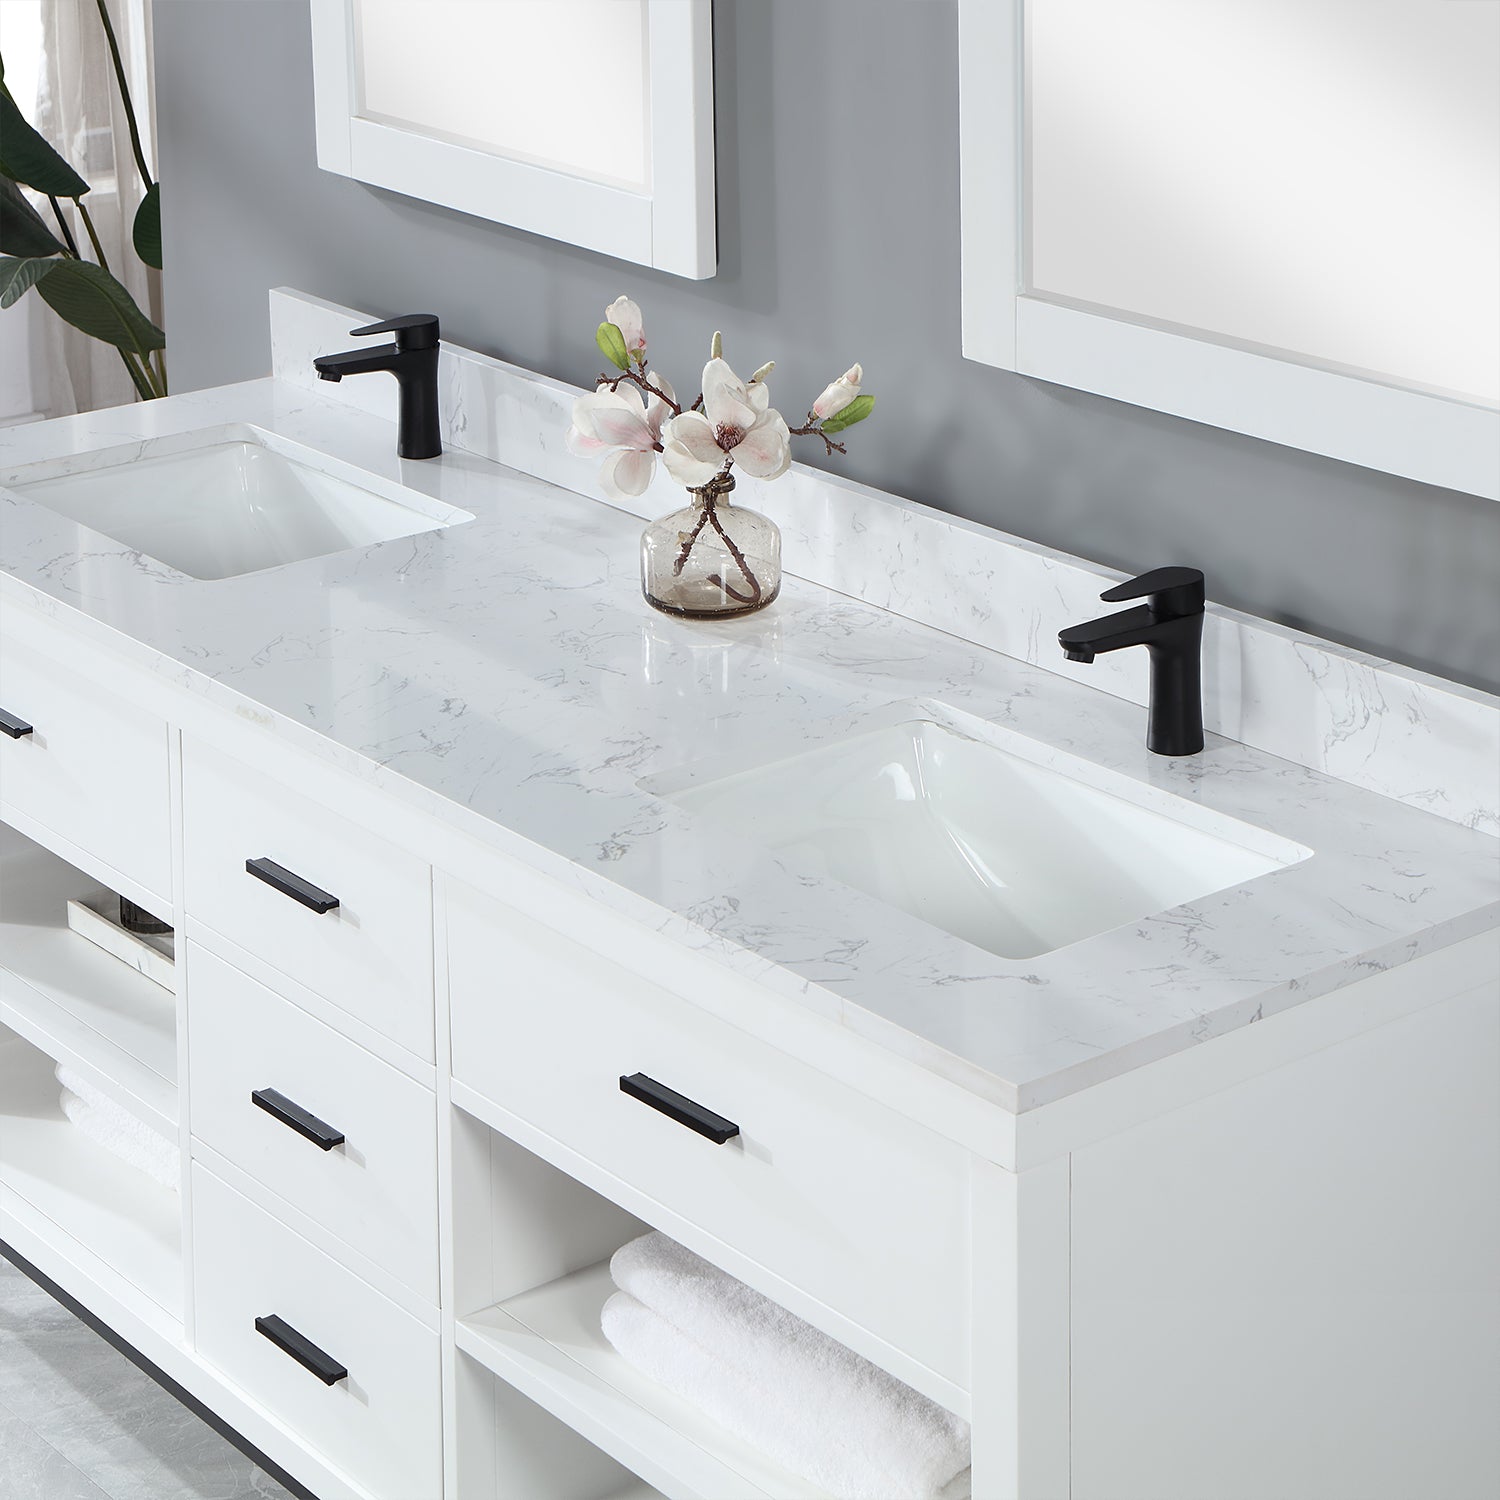 Kesia 72" Double Bathroom Vanity Set with Aosta White Composite Stone Countertop